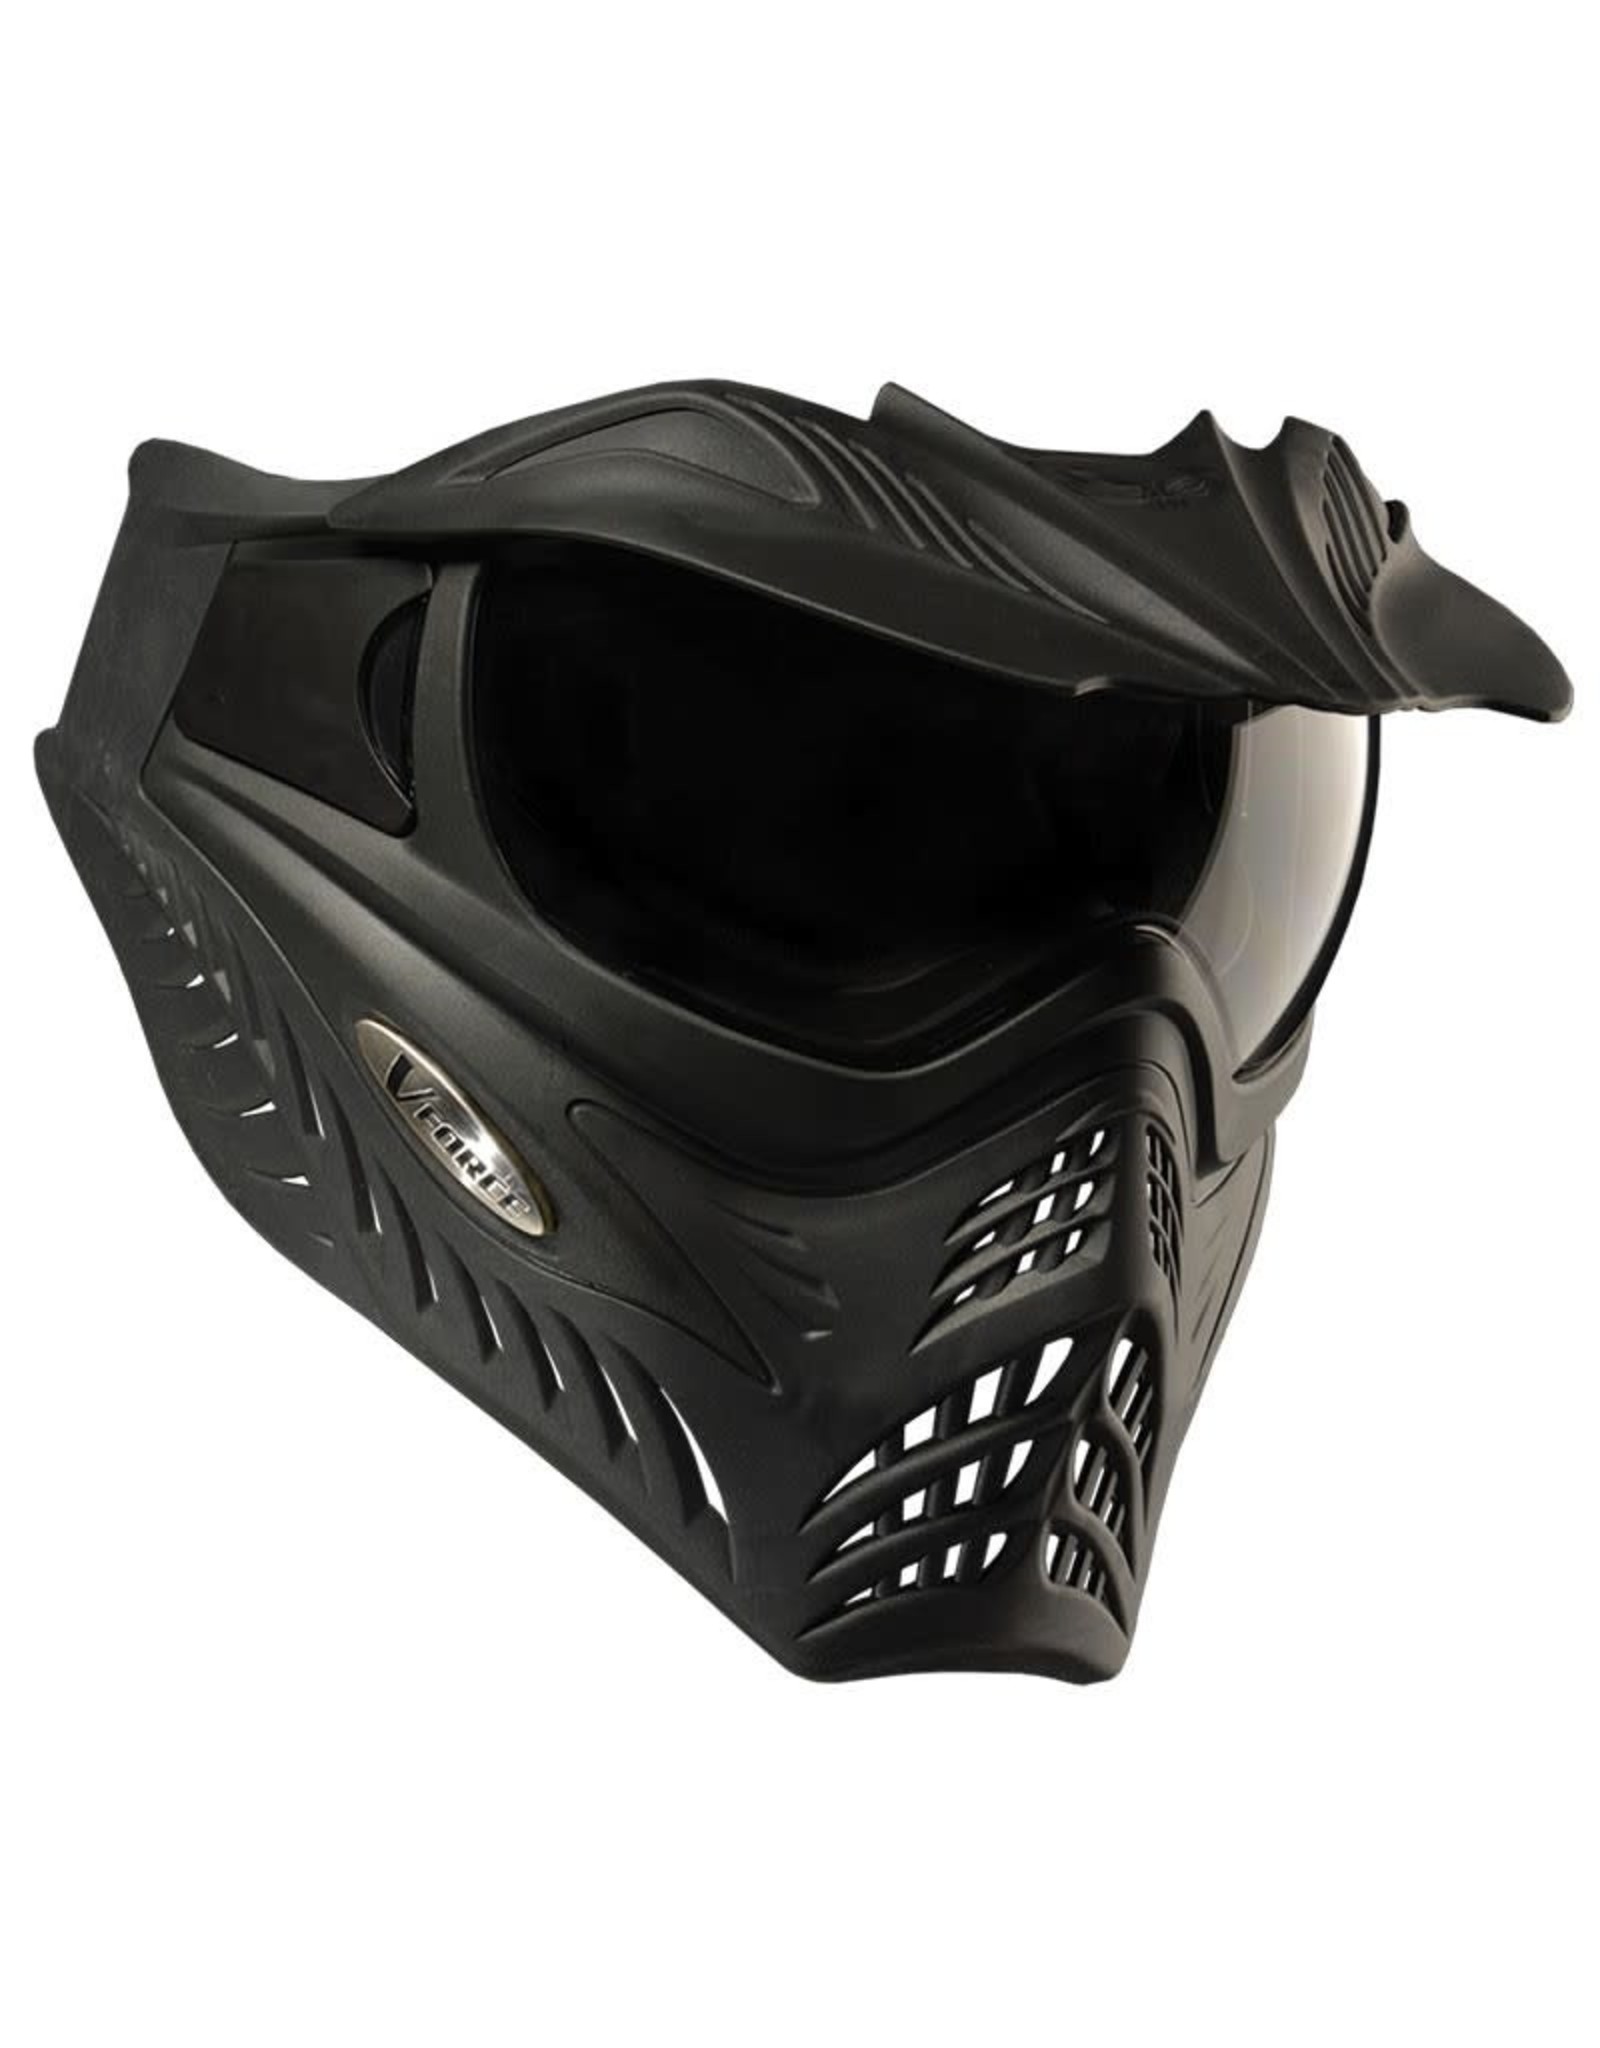 Vforce VForce Grill 2.0 Thermal Mask Clear Lens - Black/Black